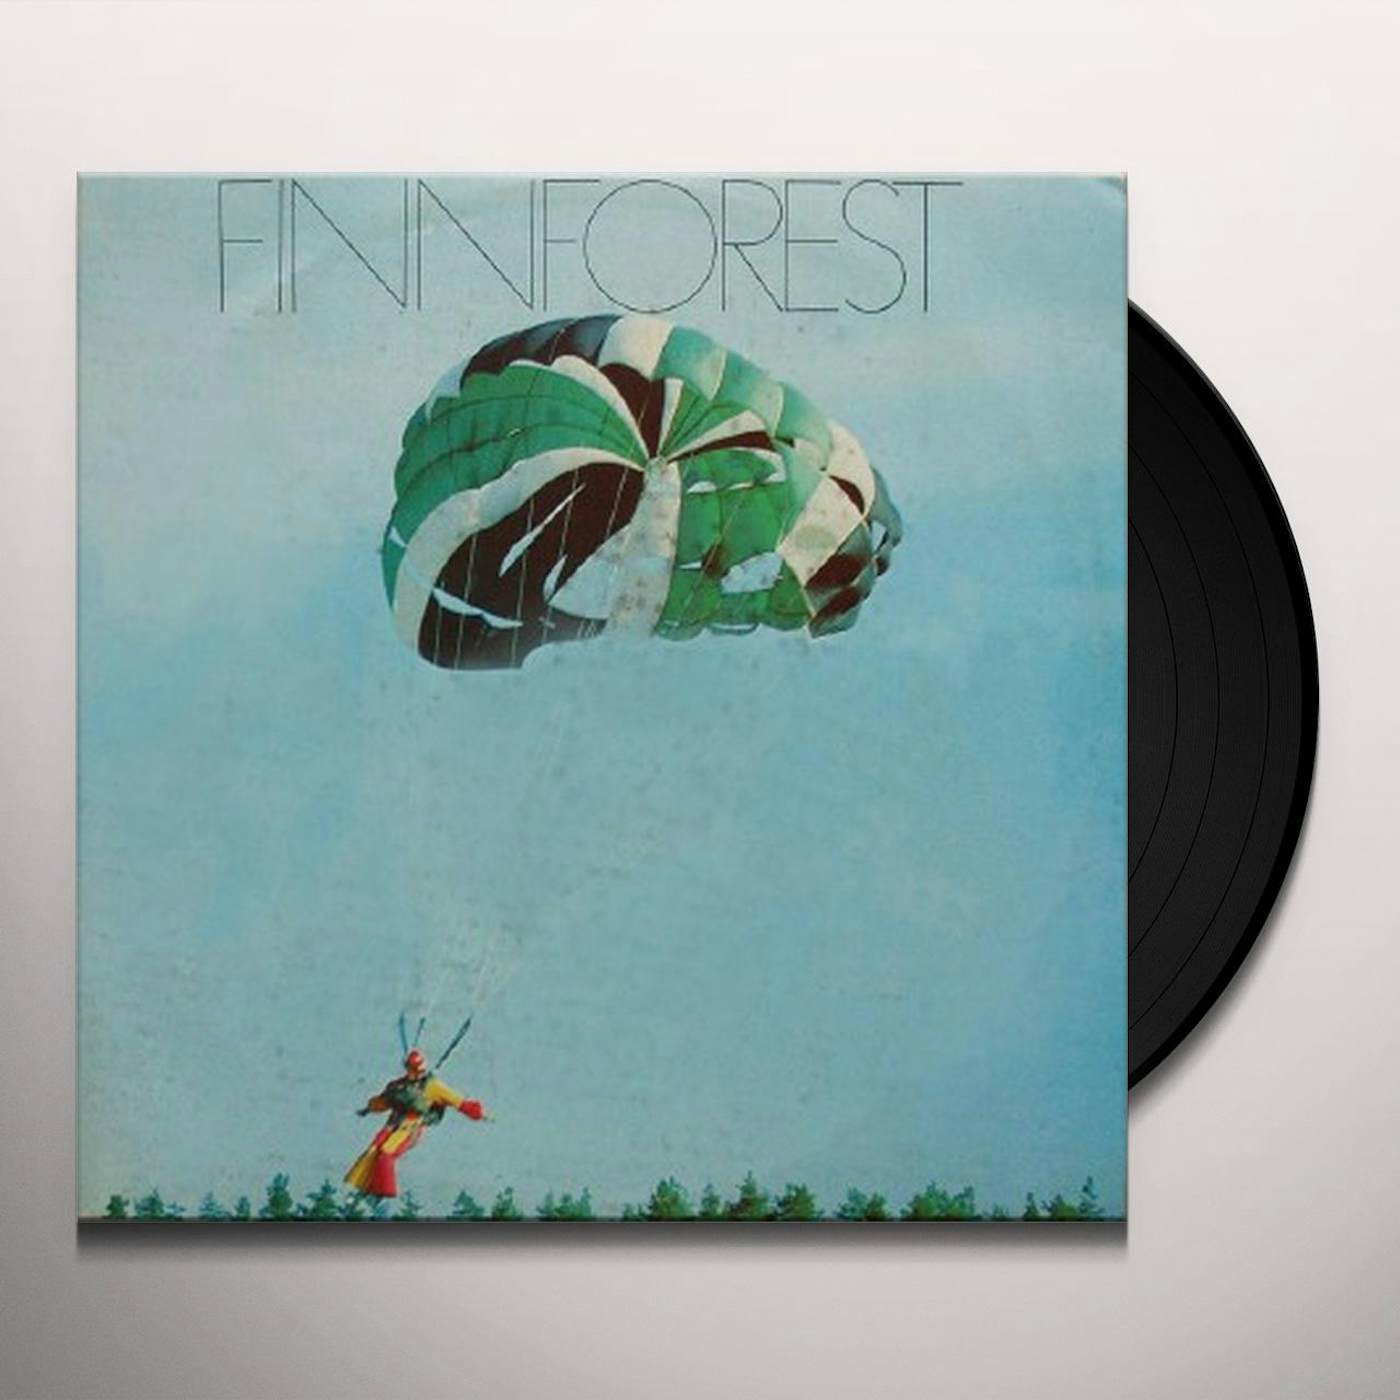 Finnforest Vinyl Record